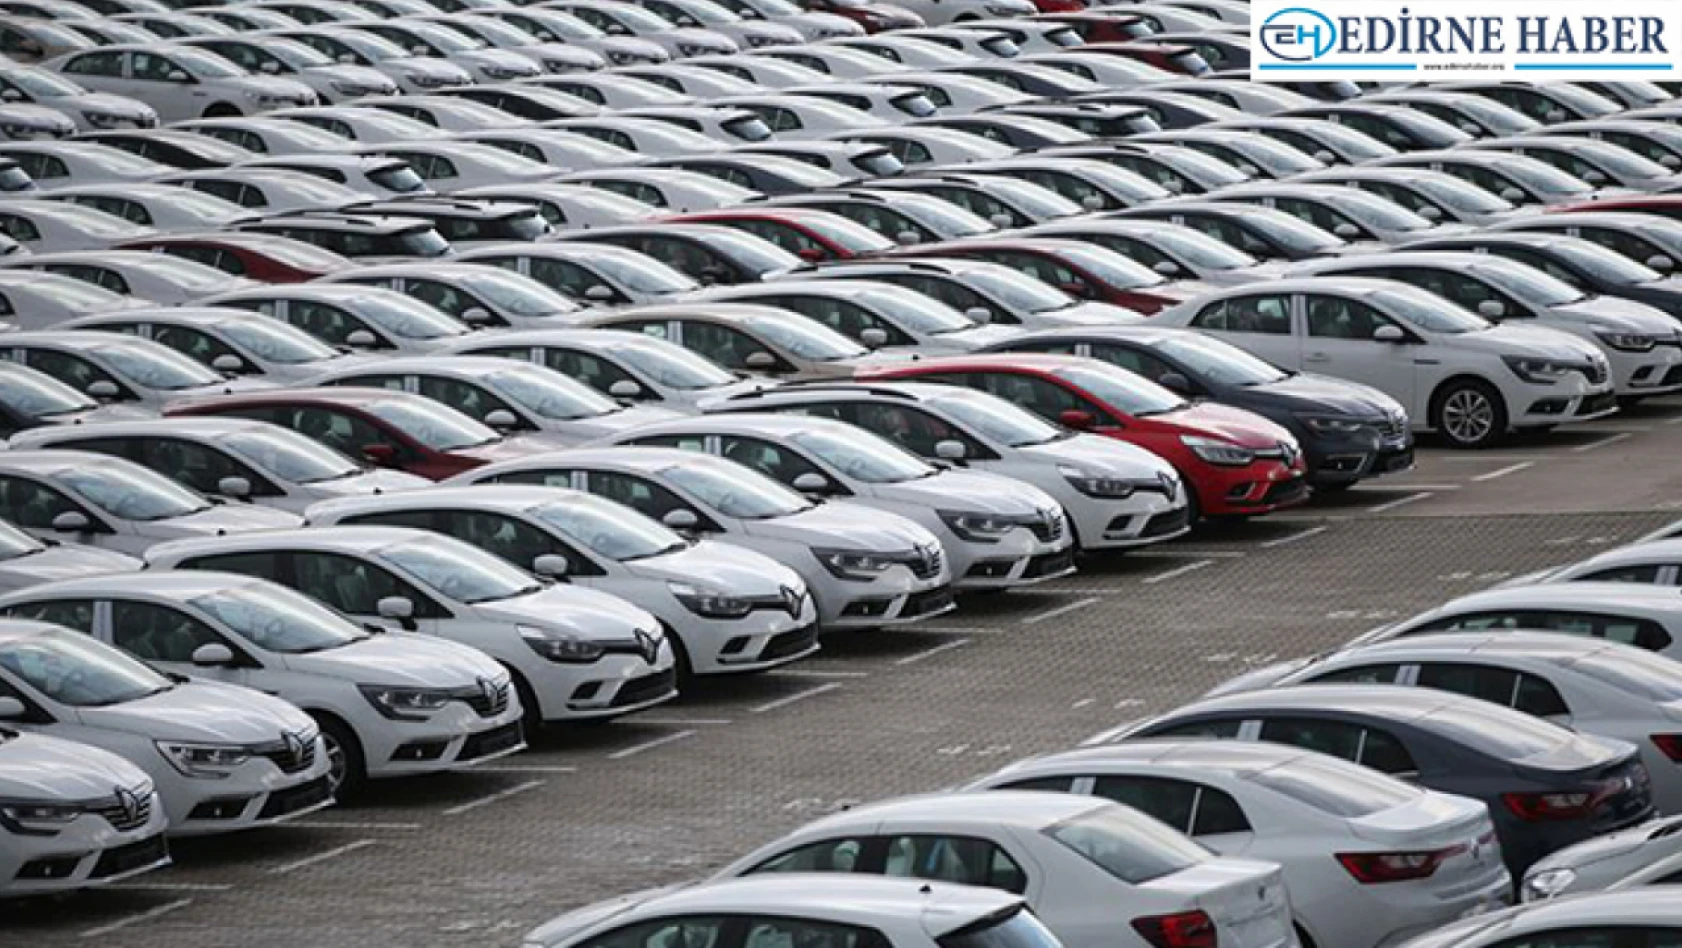 Ticaret Bakanlığı ikinci el otomobil satışına kısıtlama getirdi